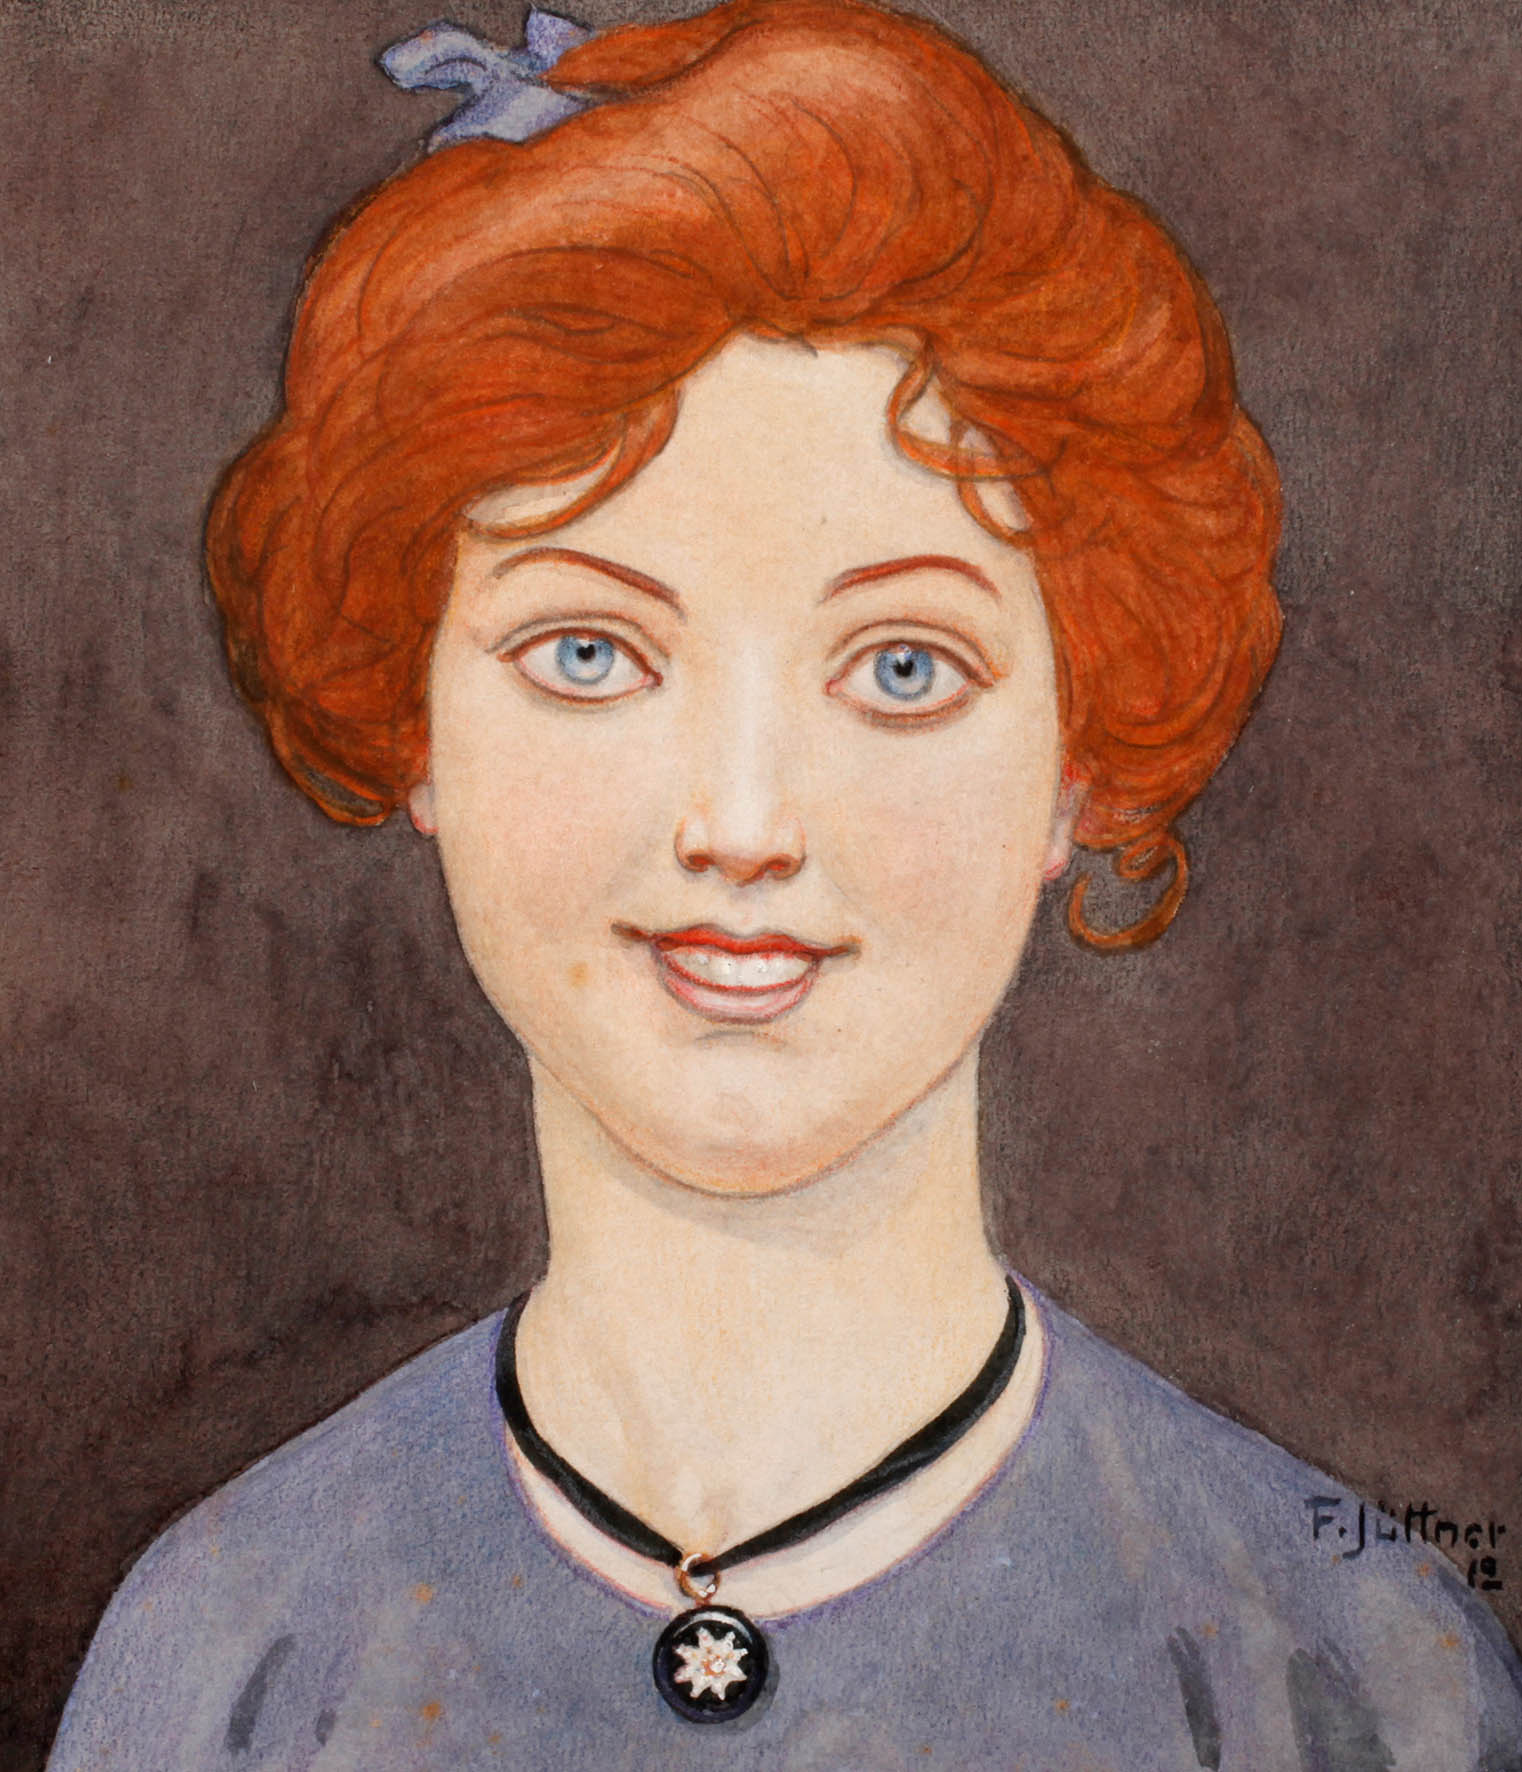 Franz Jüttner, Mädchenportrait